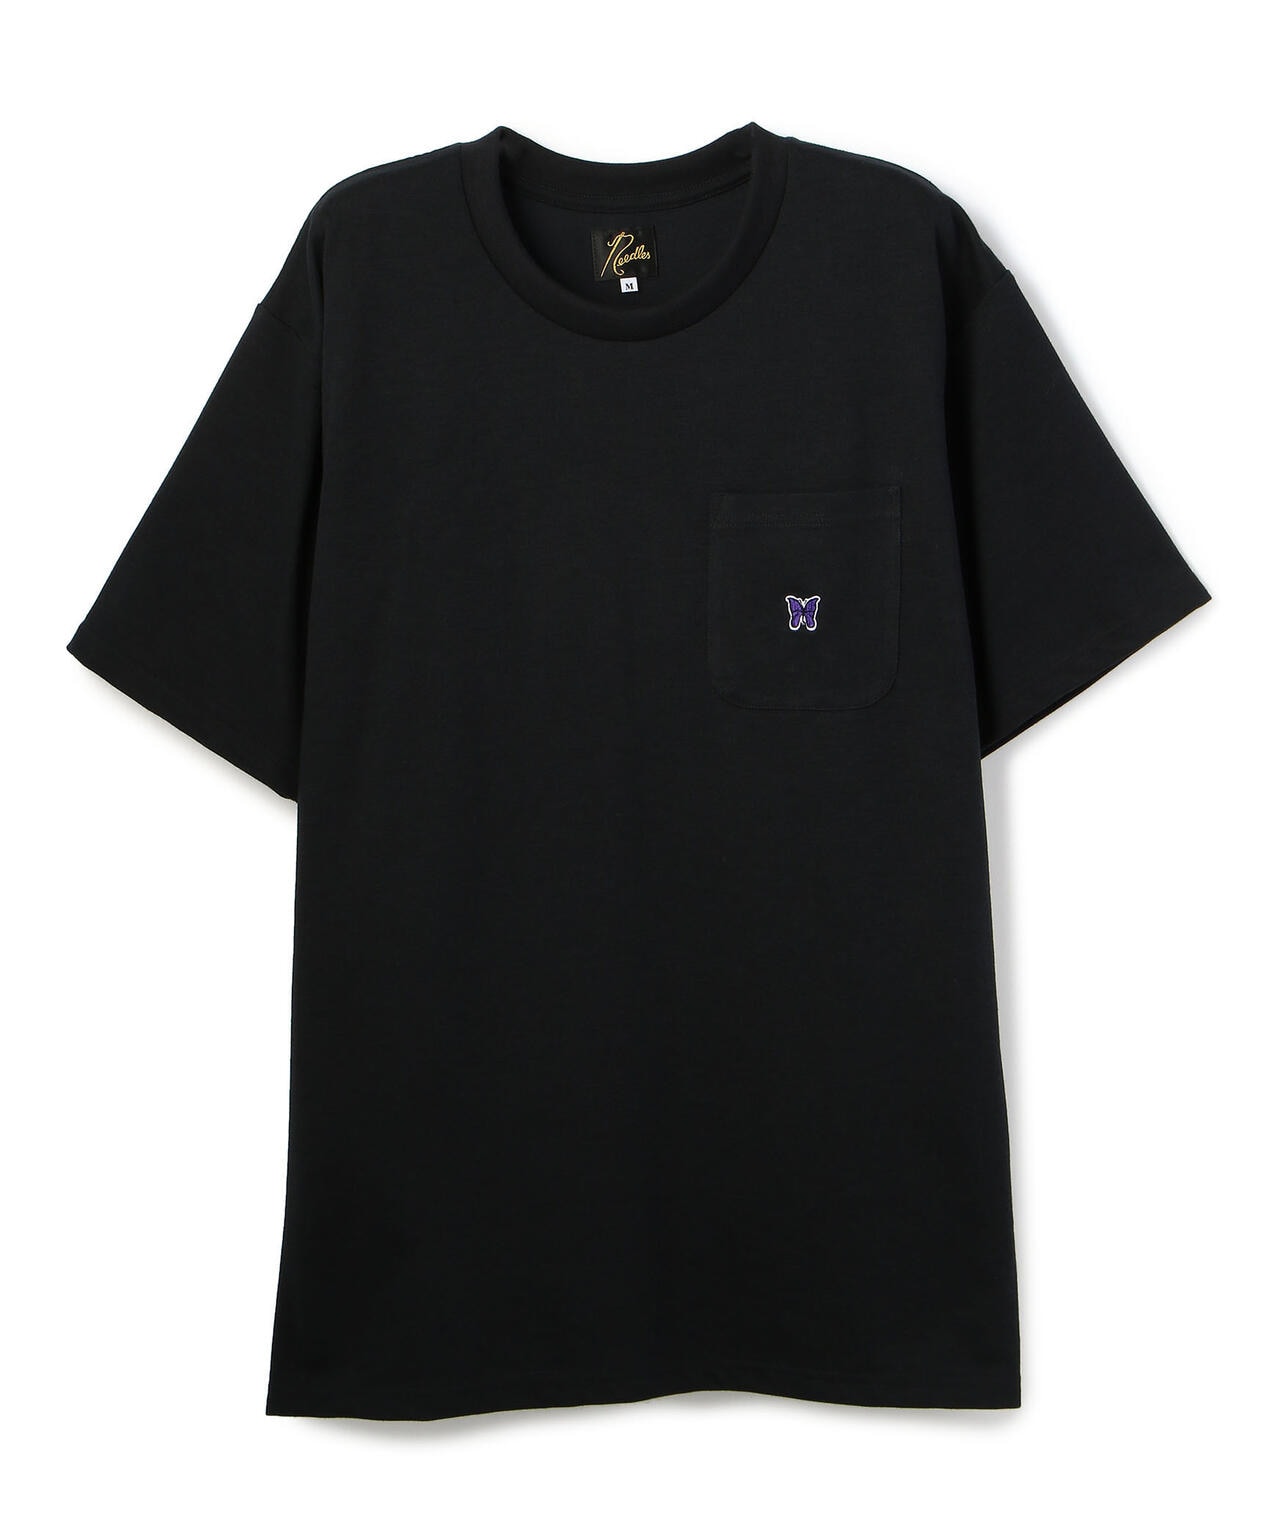 needlesニードルス tシャツ - Tシャツ/カットソー(半袖/袖なし)